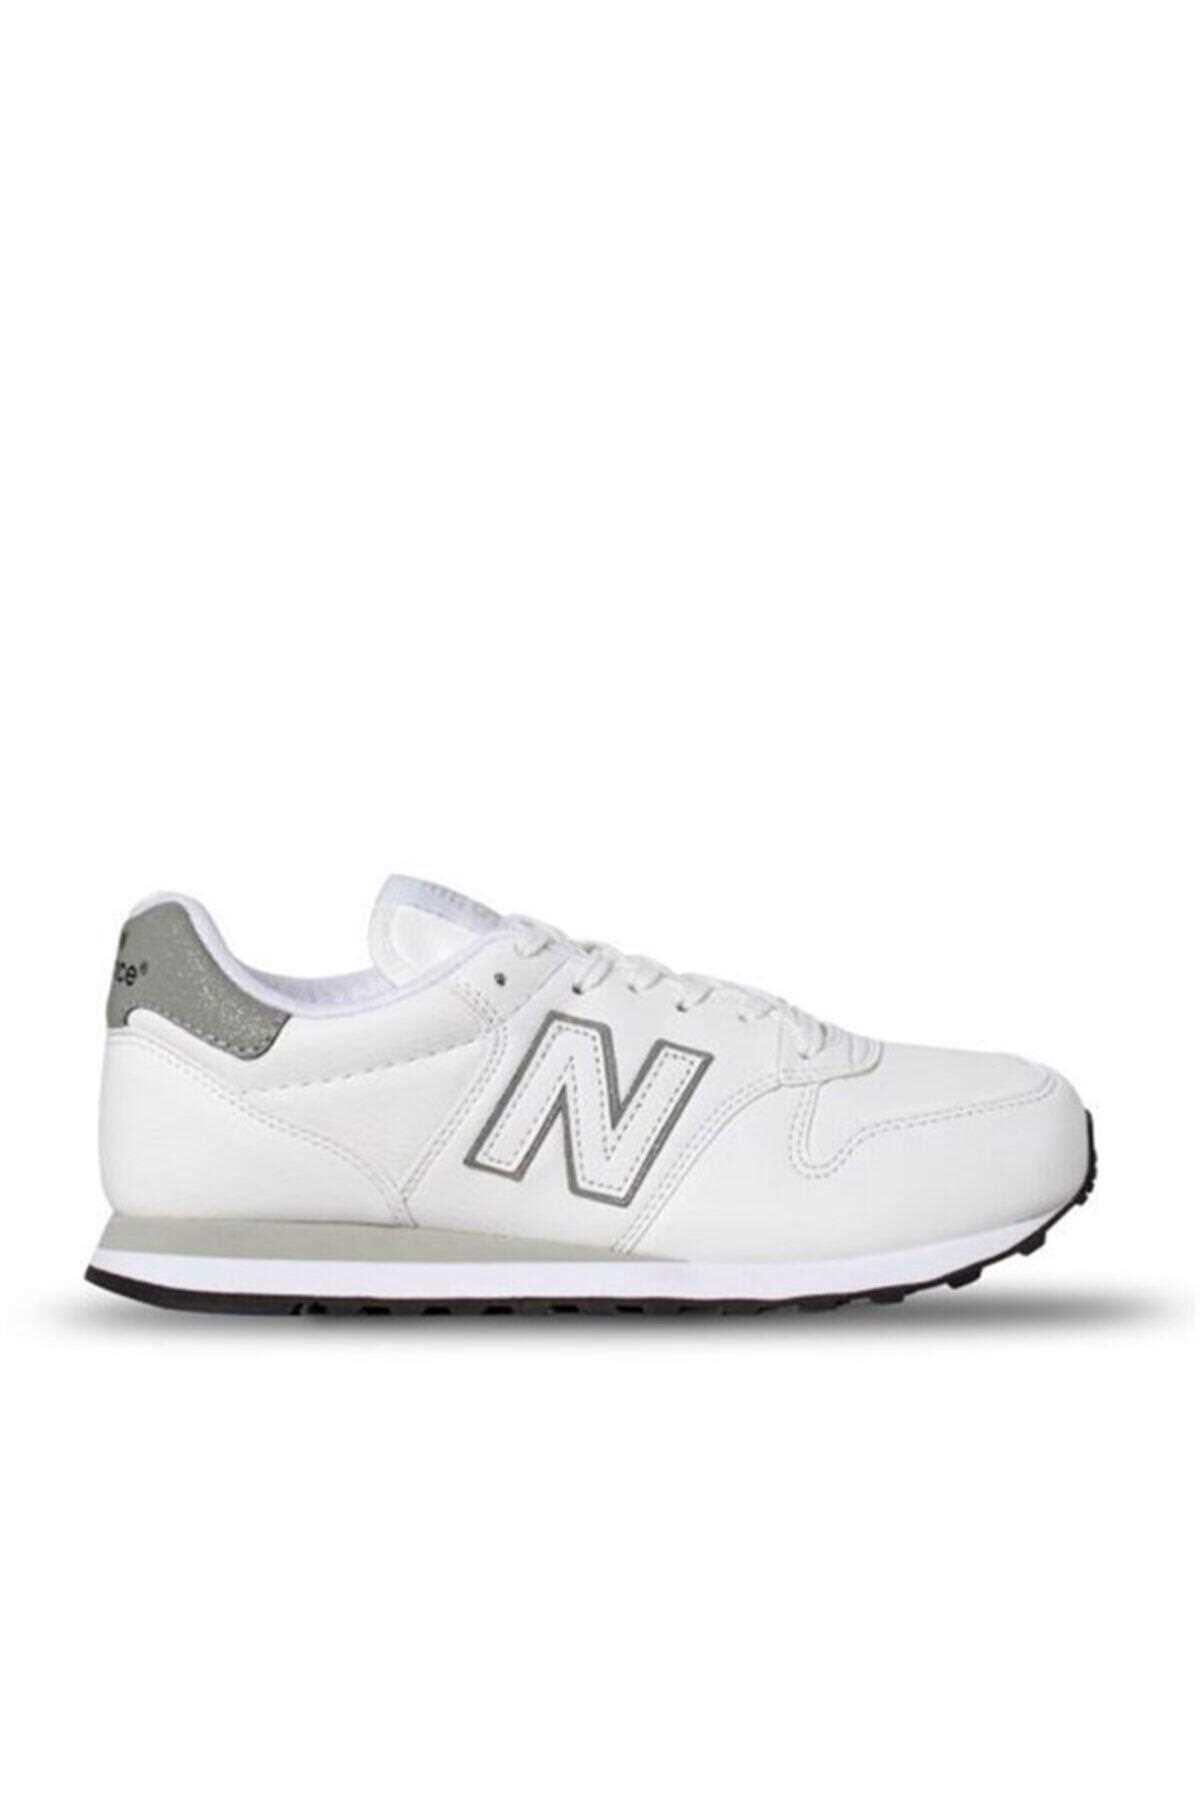 فروش انلاین کفش مخصوص پیاده روی زنانه برند New Balance رنگ سفید ty69457385